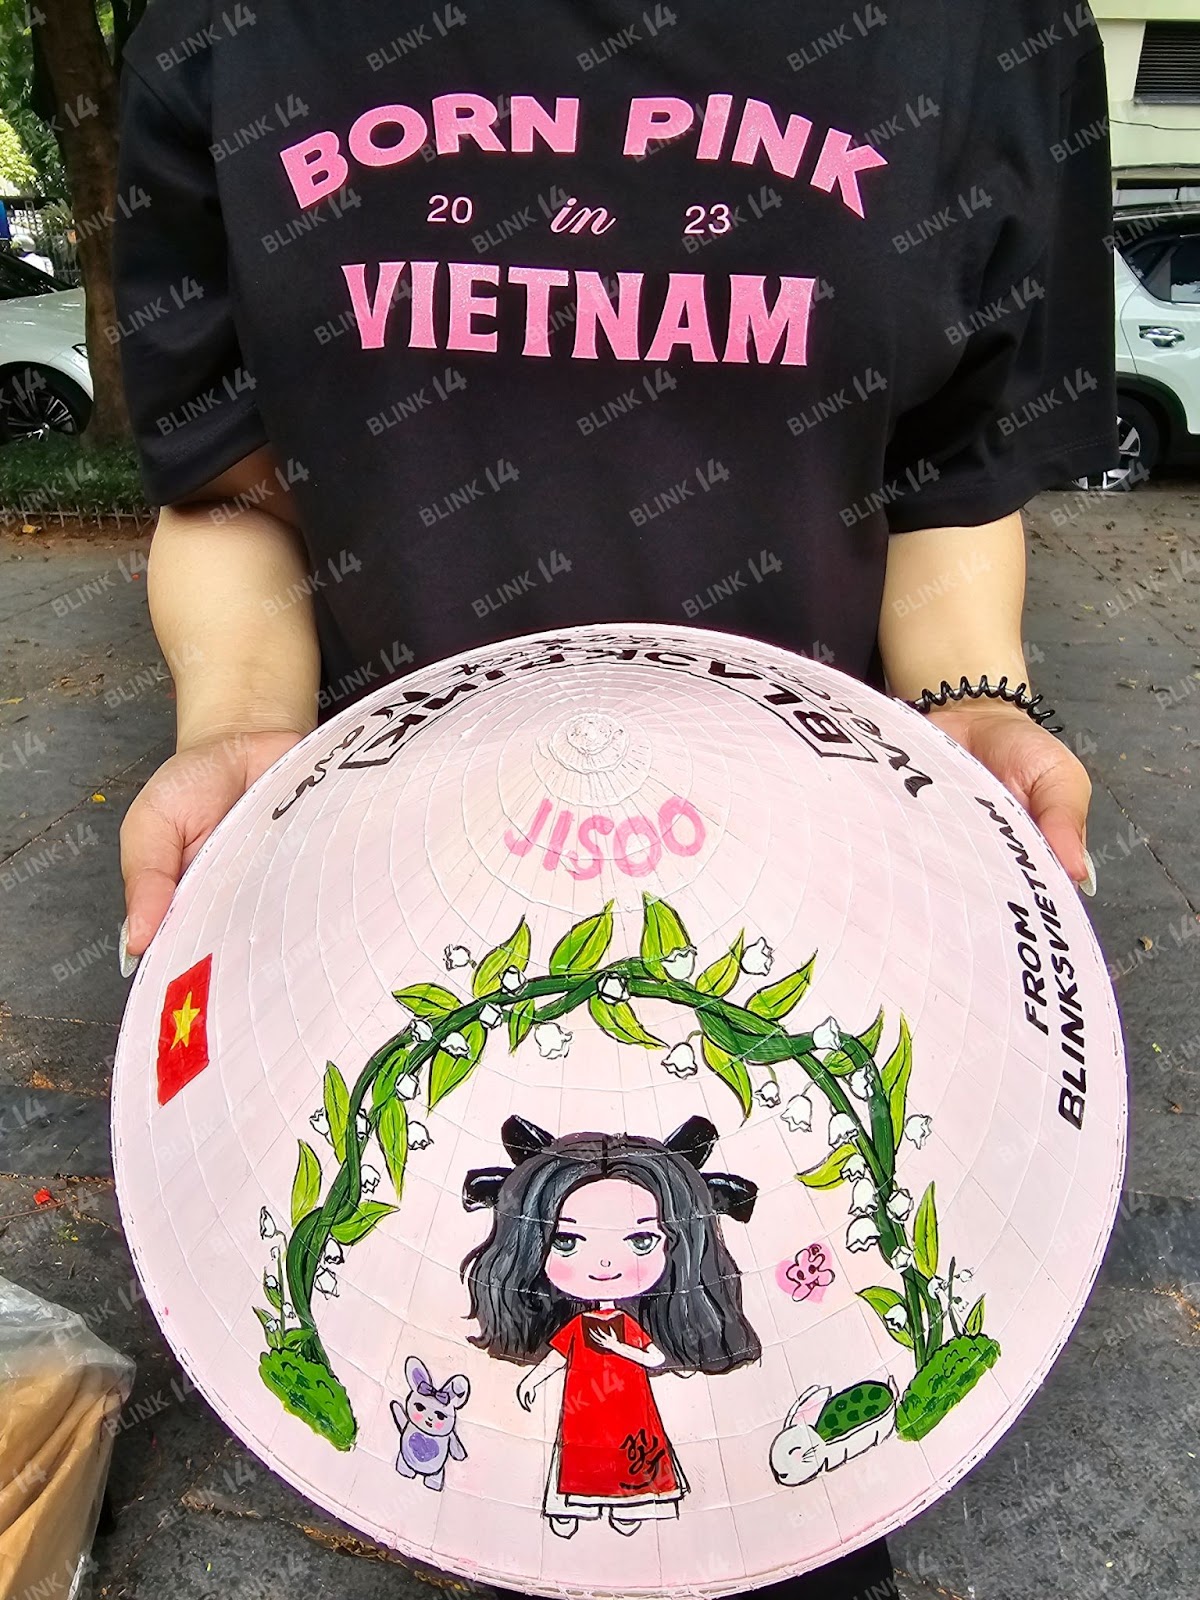 Xe buýt đen hồng quảng bá show Born Pink đi khắp Hà Nội, cận cảnh món quà của fan Việt sẽ được trao tận tay BLACKPINK - Ảnh 5.